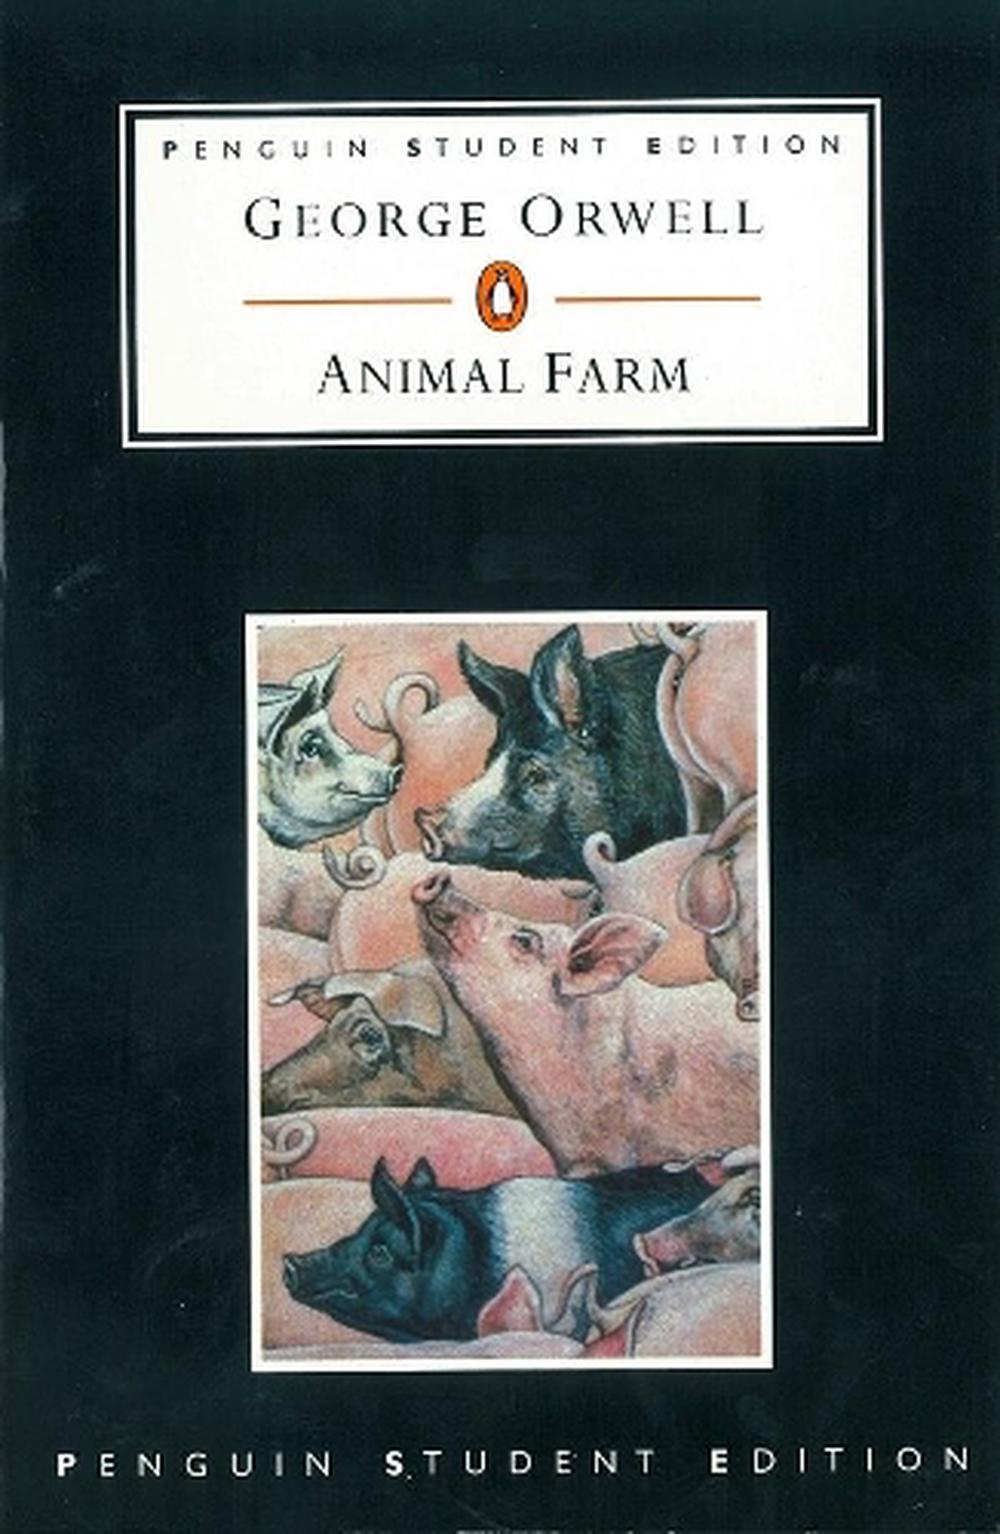 summary on animal farm by george orwell